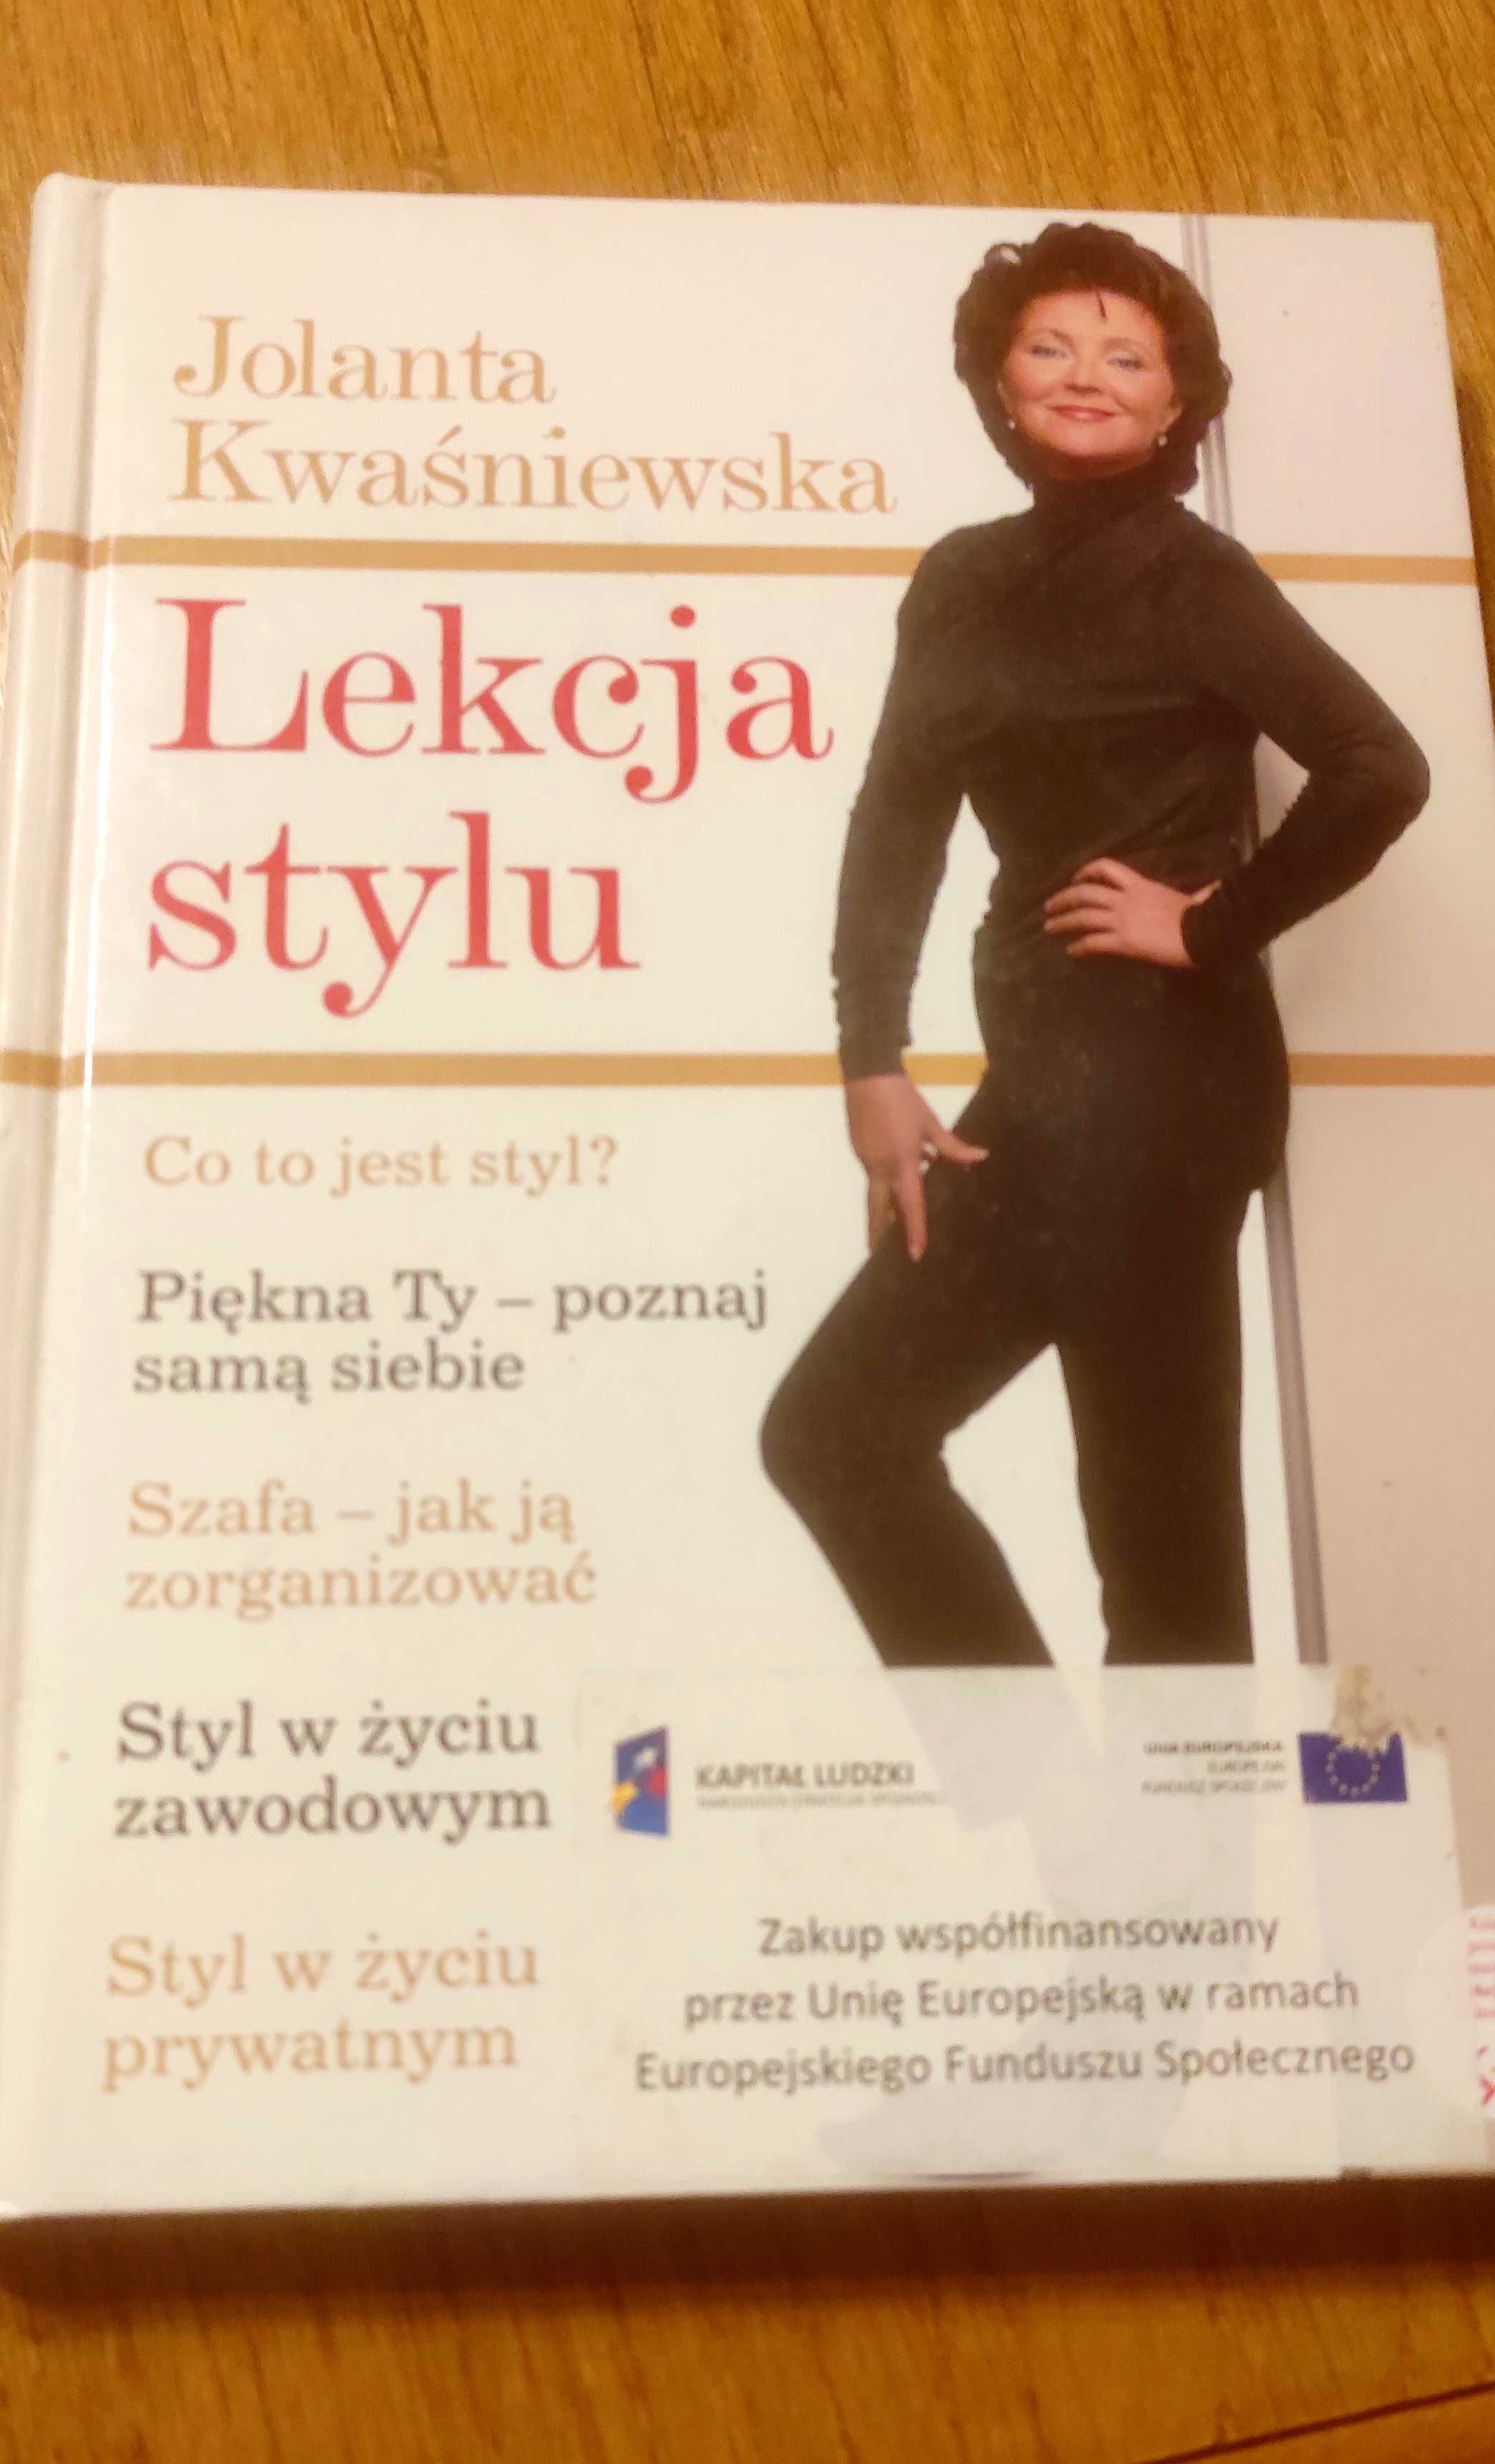 Książka Jolanta Kwaśniewska Lekcja stylu - zawsze aktualna!